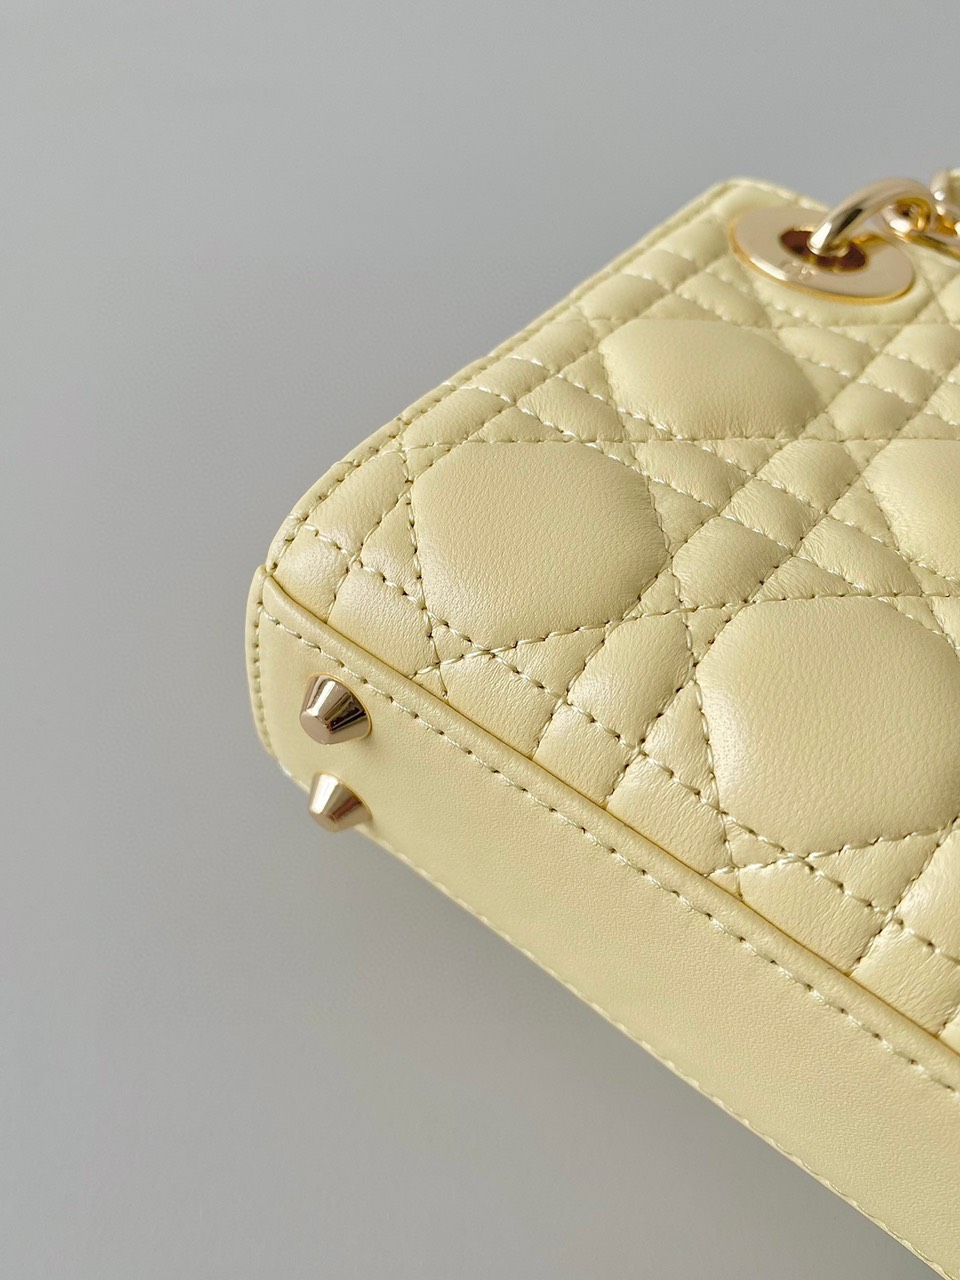 Túi Xách Dior Lady Micro Siêu Cấp Màu Vàng Size 12cm 6601